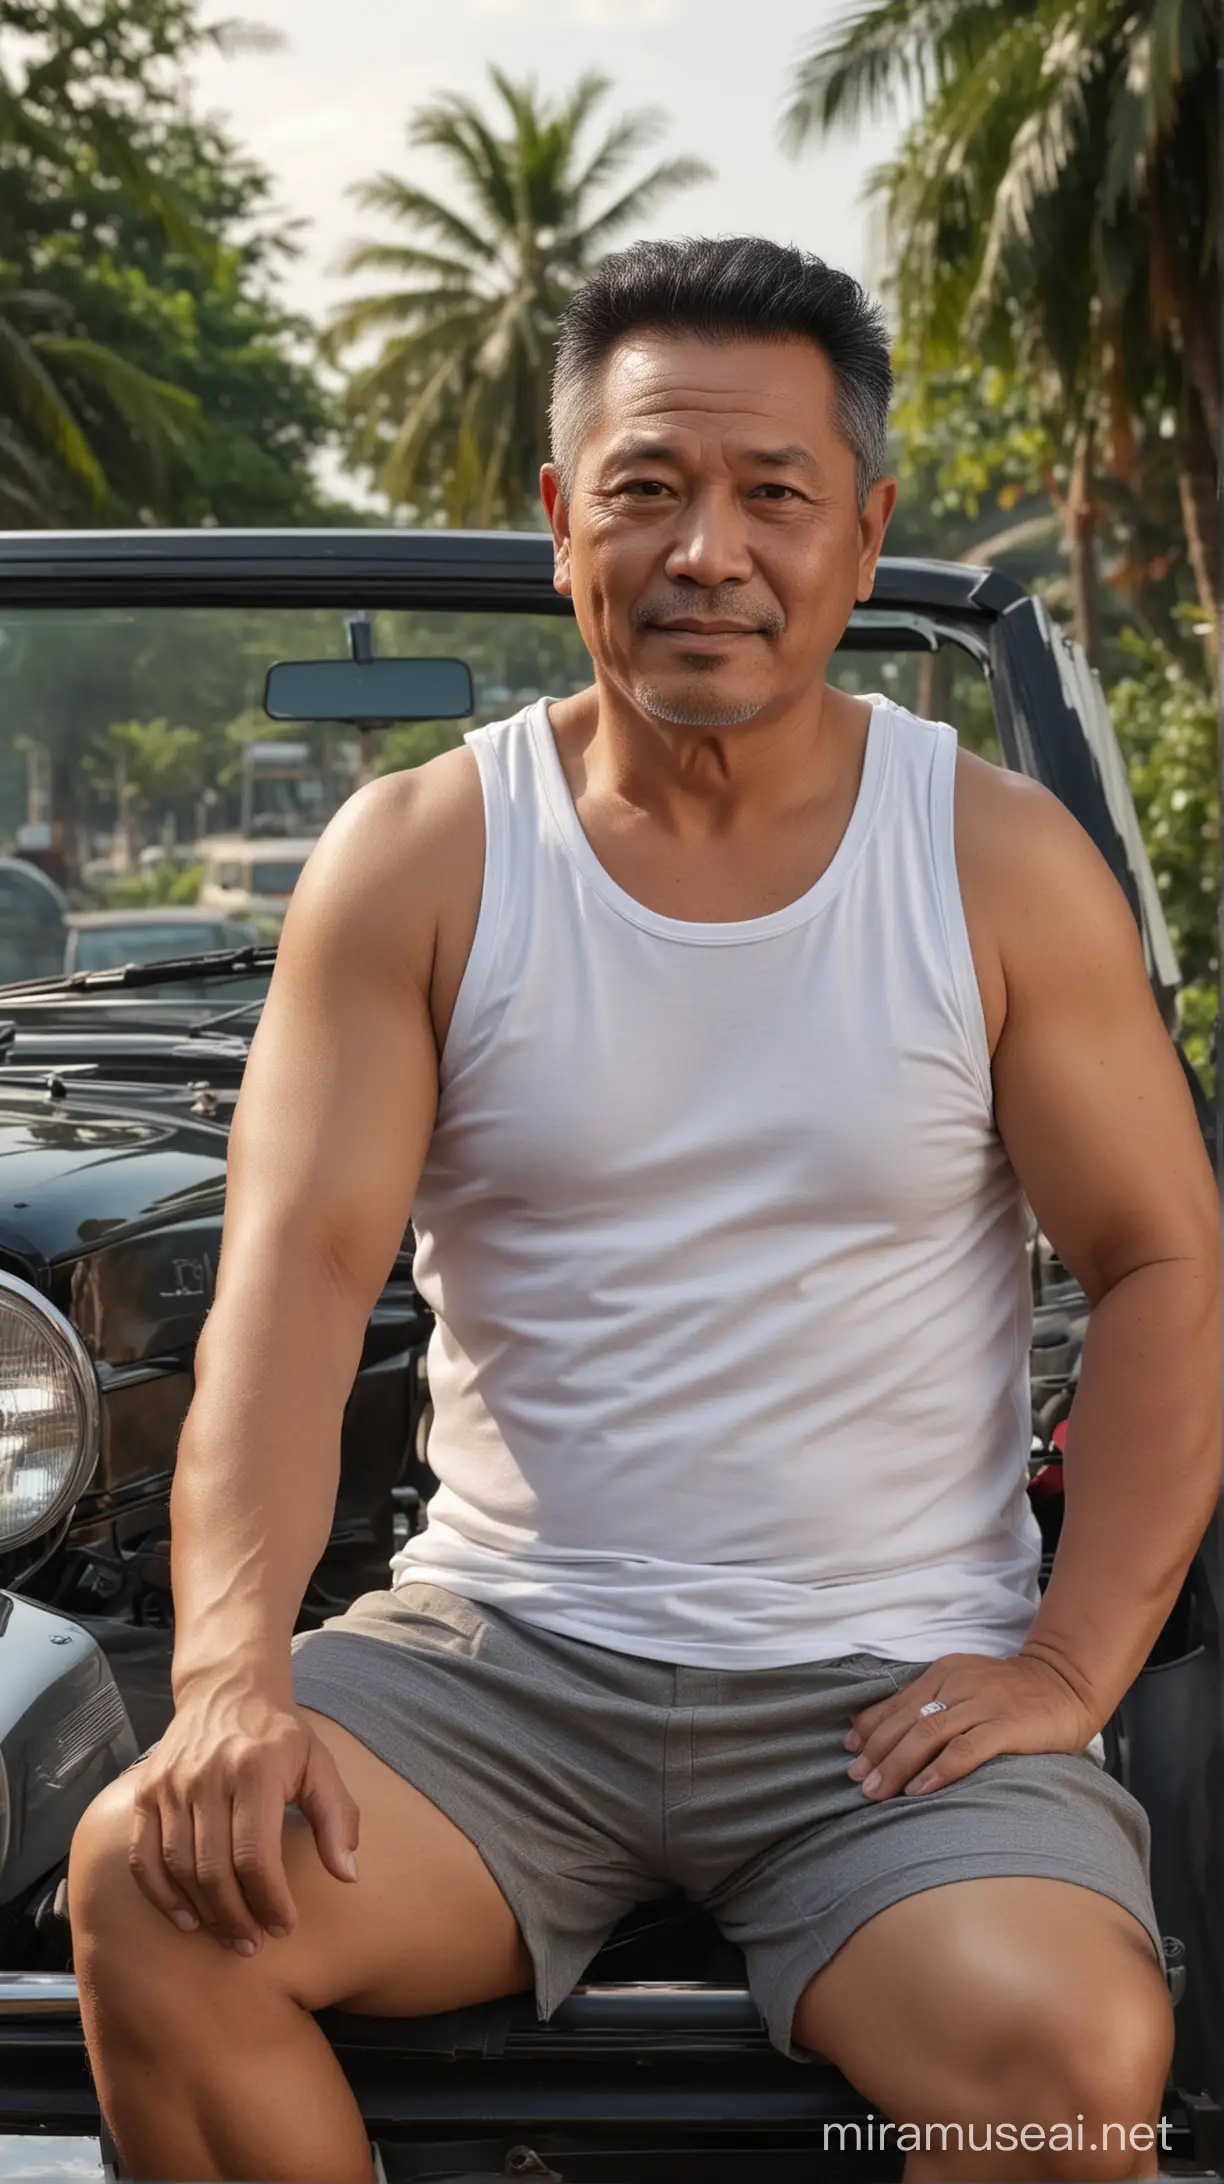 Foto realistis,bapak bapak indonesia usia 55 tahun badan gemuk,rambut hitam rapi belah tepi,memakai baju tank top putih dan celana pendek tipis,sedang duduk di atas mobil alpard hitam,detail,persis,8k hd